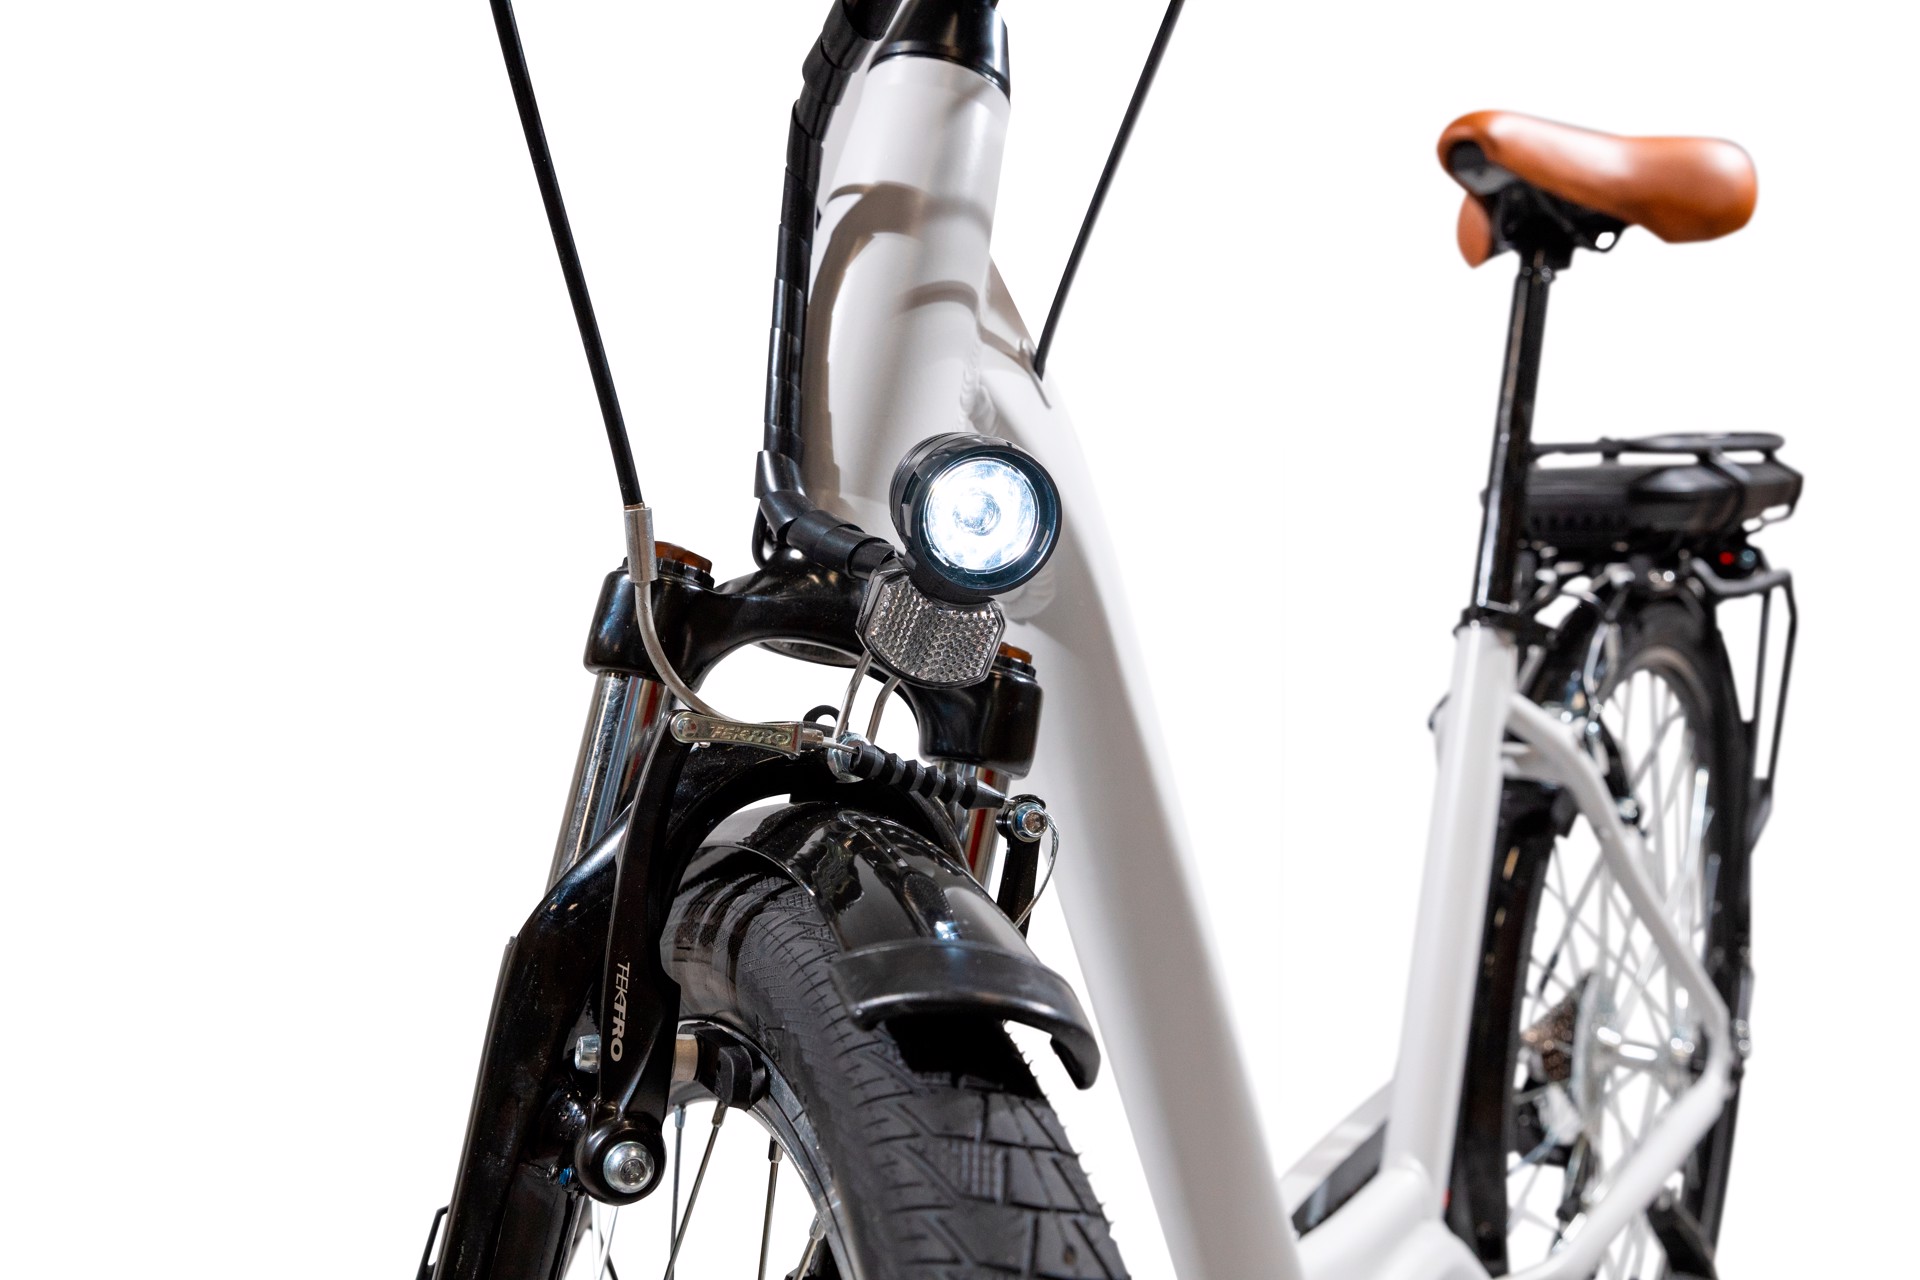 EMG Bici Elettrica E-bike Vintage con telaio in alluminio 19, ruote 28,  motore centrale 250W Ananda, batteria 13AH e cambio Shimano, Bici  elettriche in Offerta su Stay On